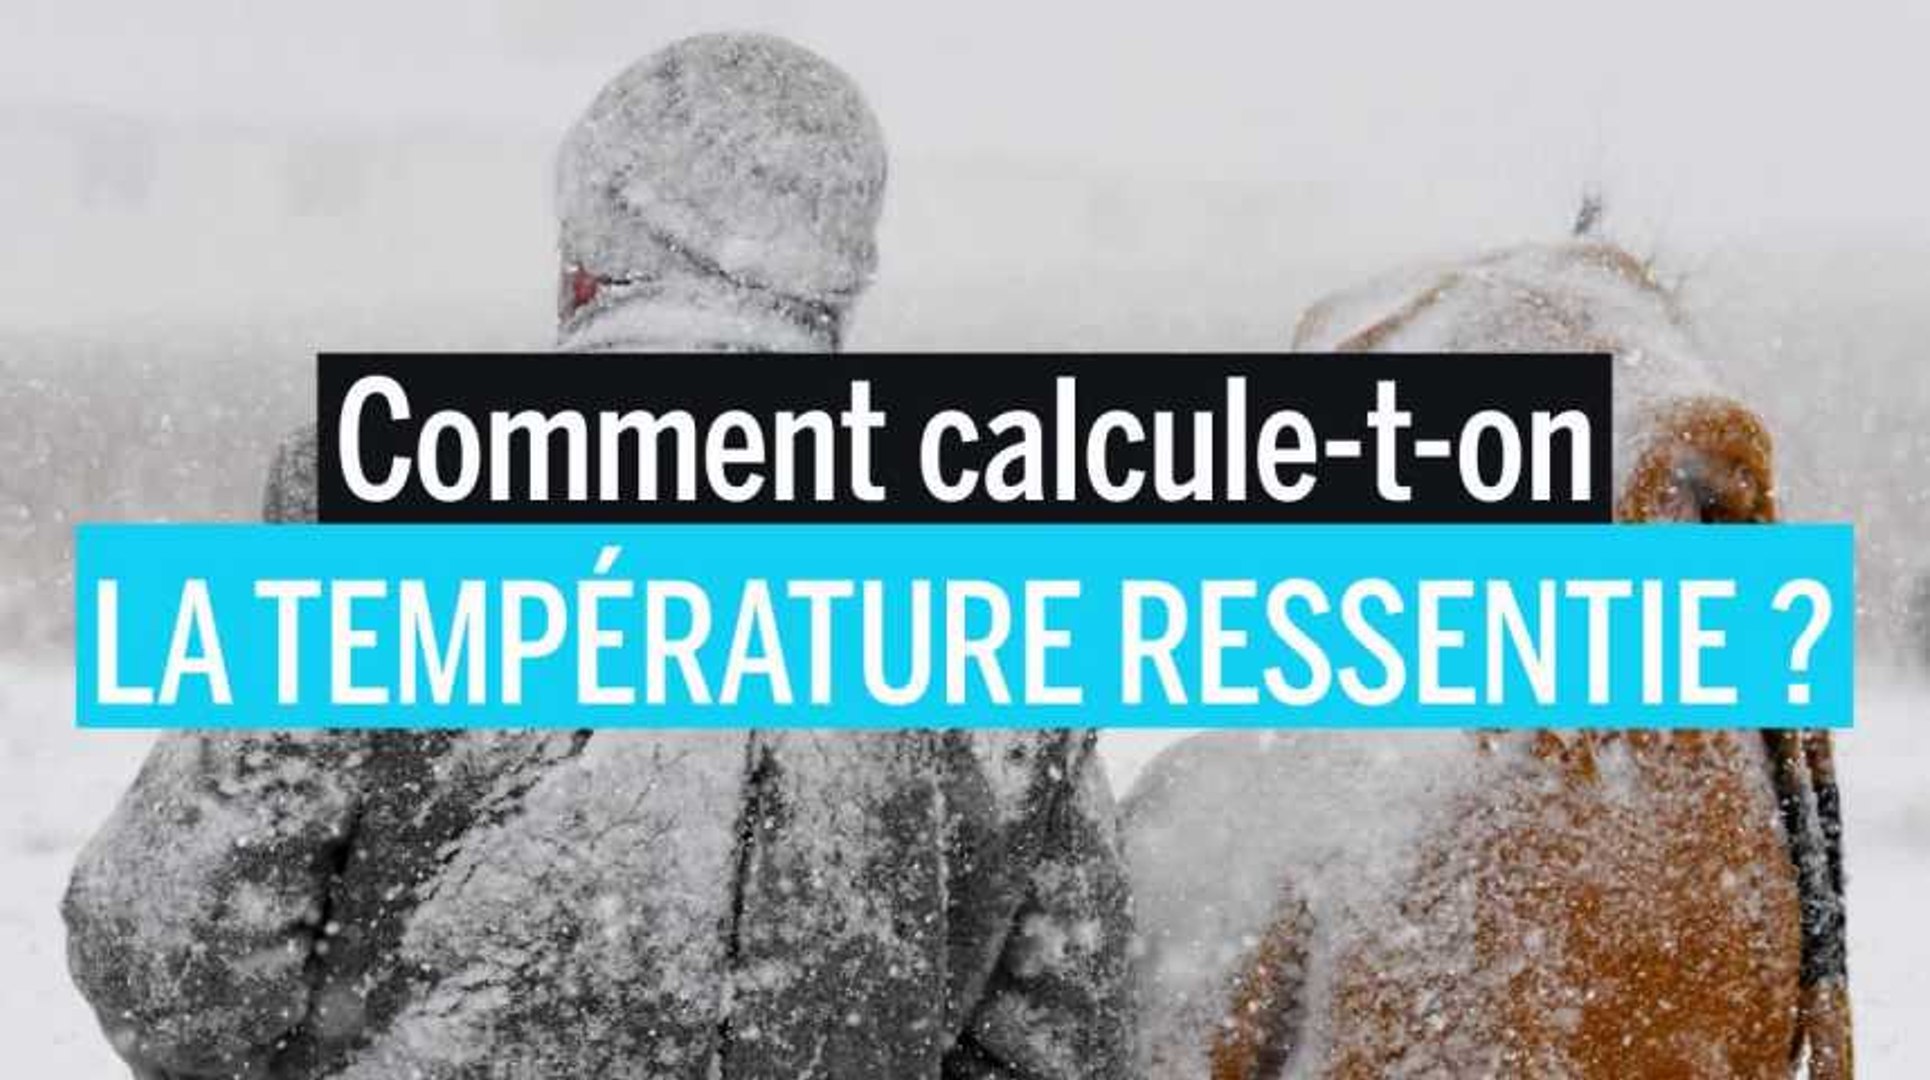 Comment calcule-t-on la température ressentie ? - Vidéo Dailymotion